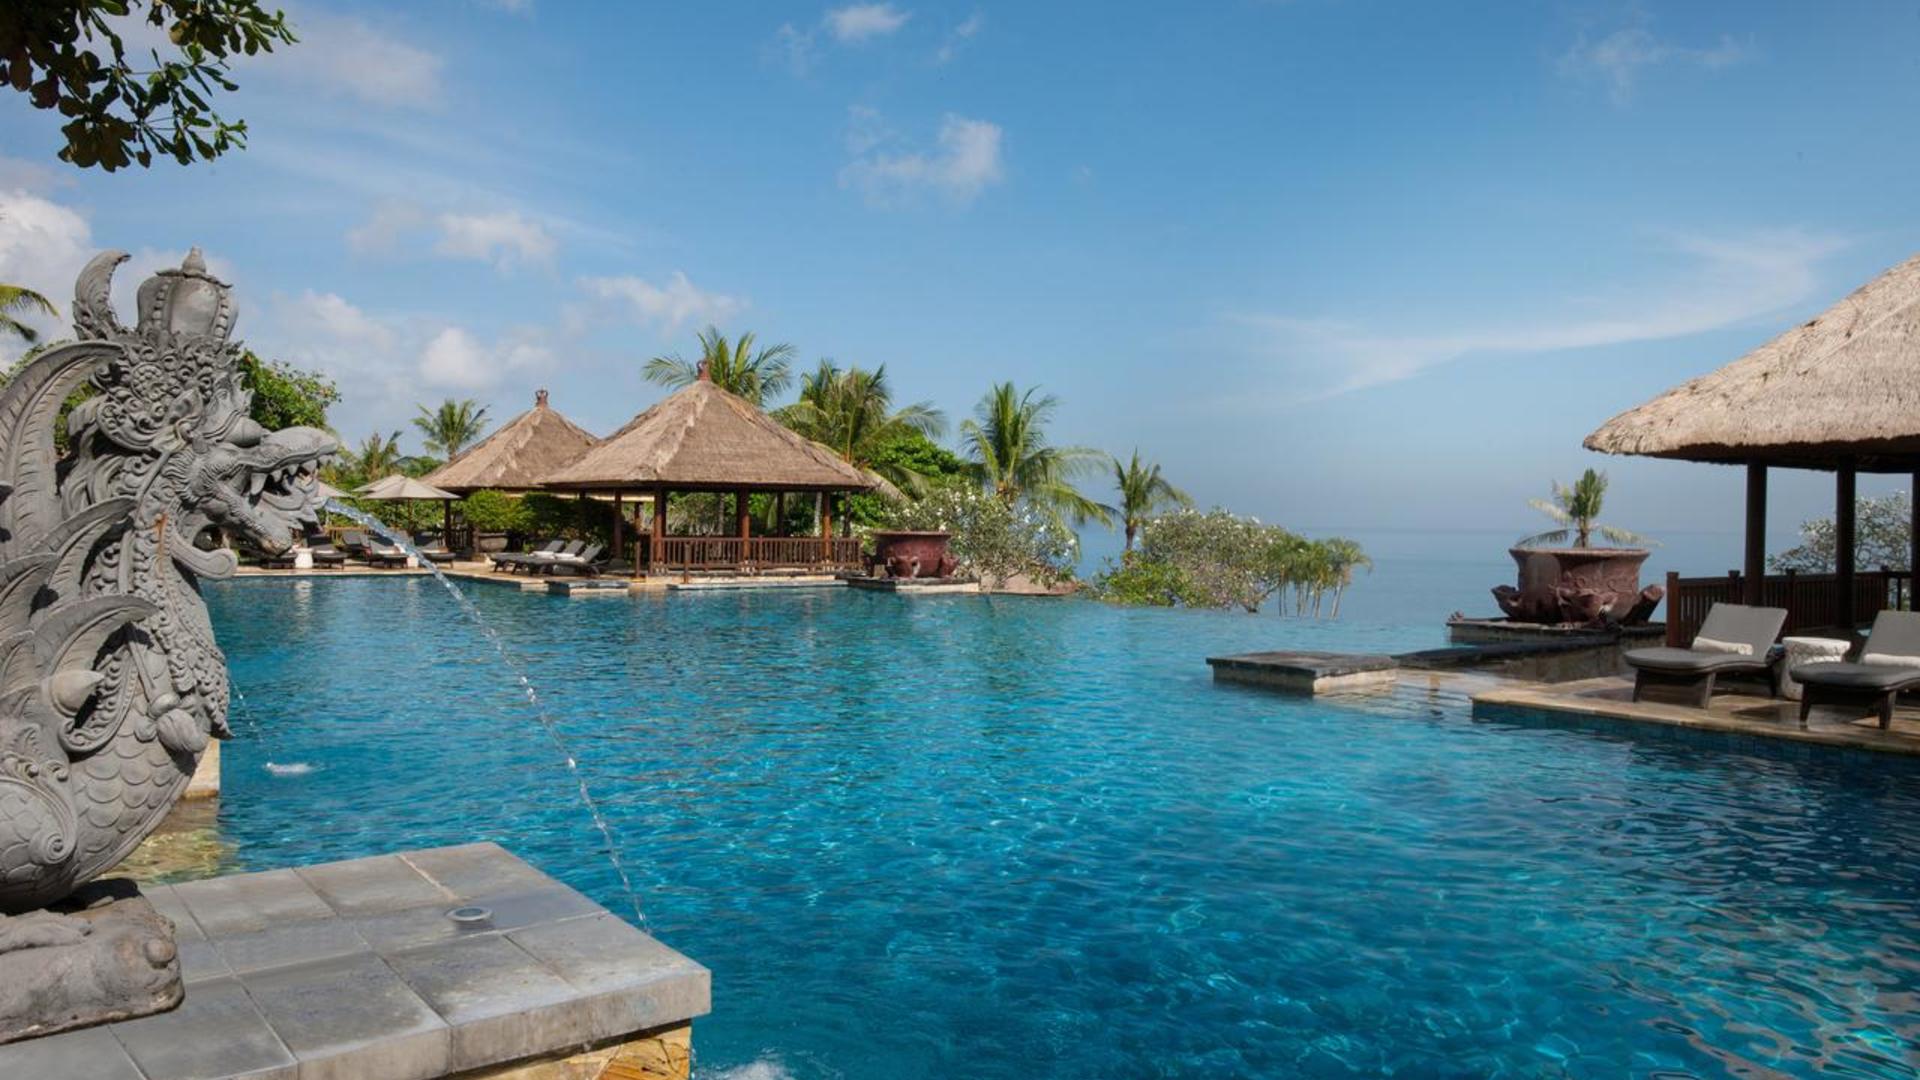 Бали индонезия. Бали остров. Ayana Resort and Spa Bali, Индонезия. Бали (остров в малайском архипелаге). Бали (остров в малайском архипелаге) достопримечательности.